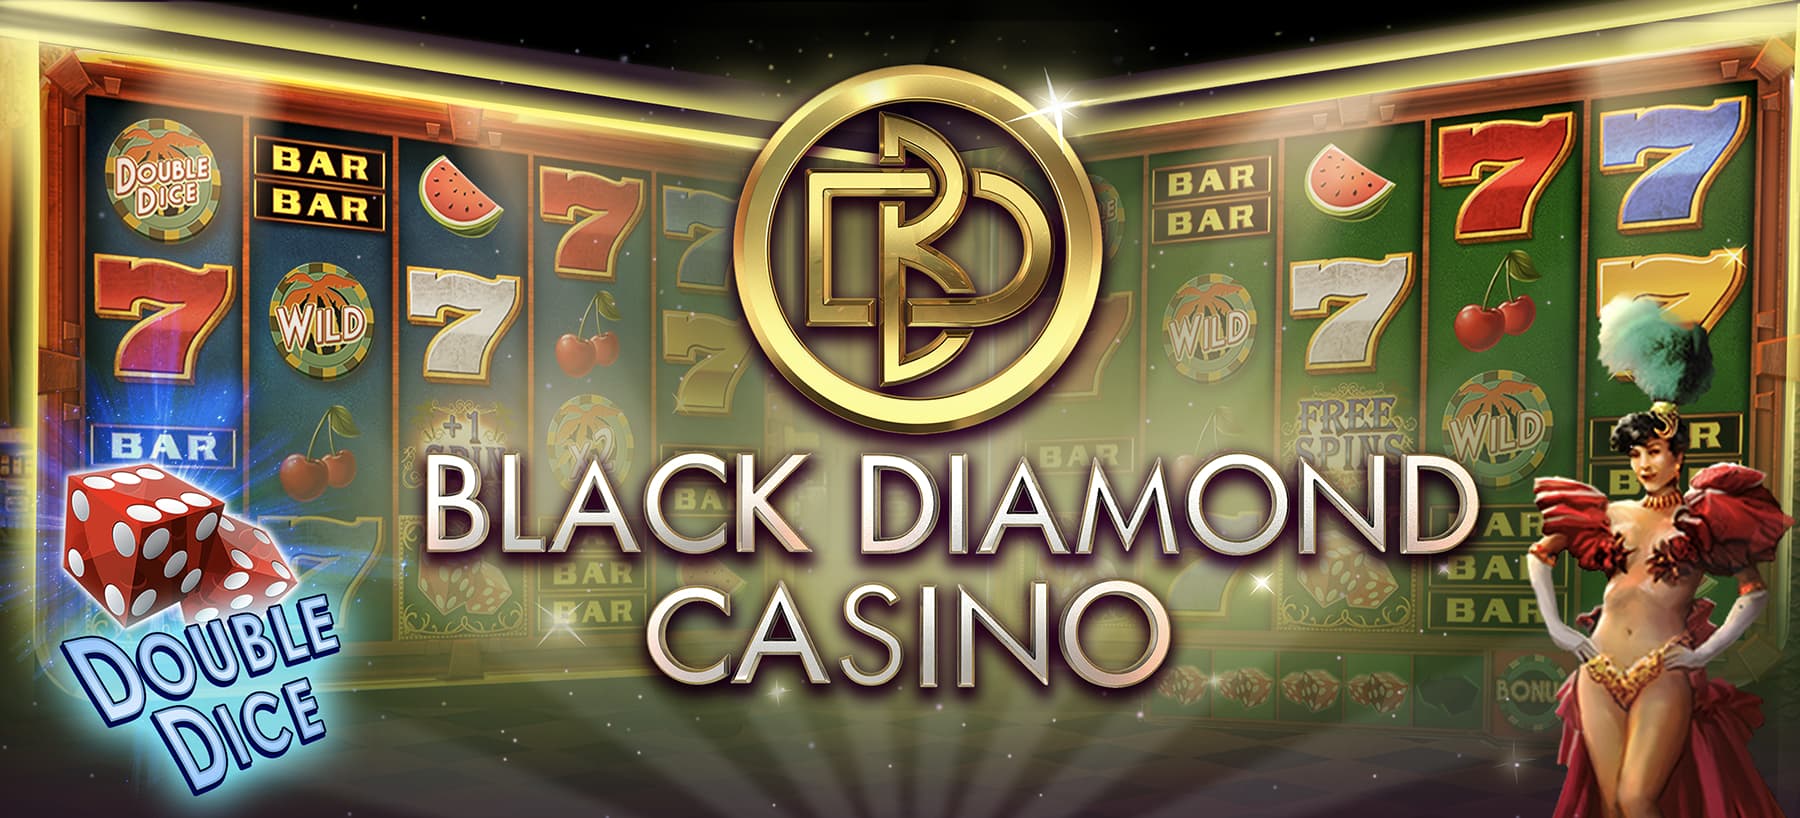 Black Diamond Casino Hero Image